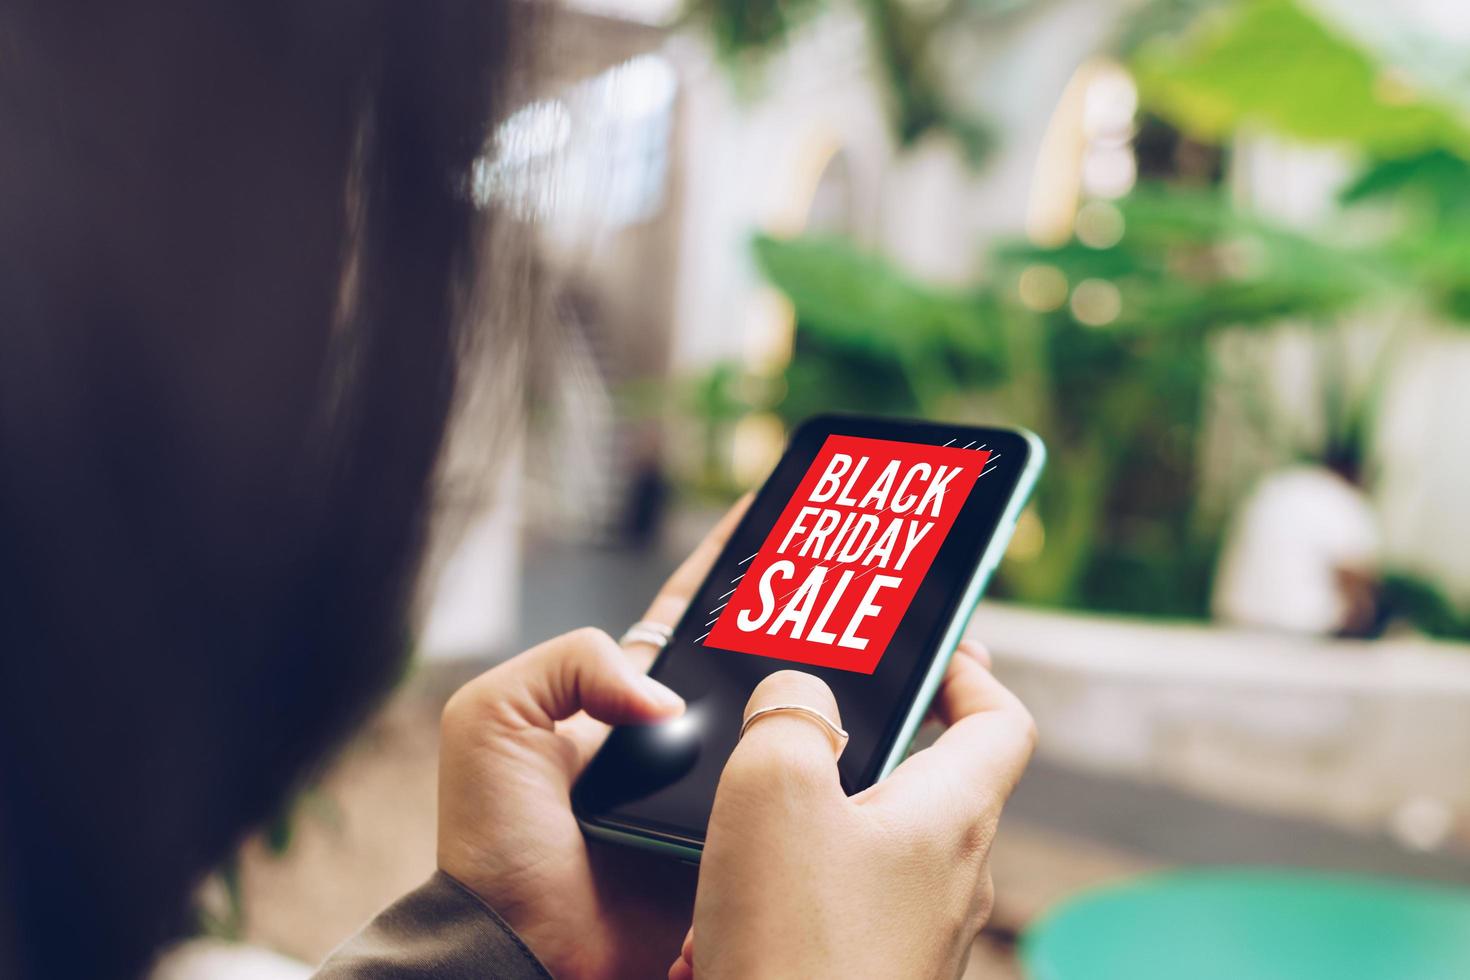 Frau, die ein Smartphone benutzt, macht Online-Verkauf am schwarzen Freitag-Verkauf foto